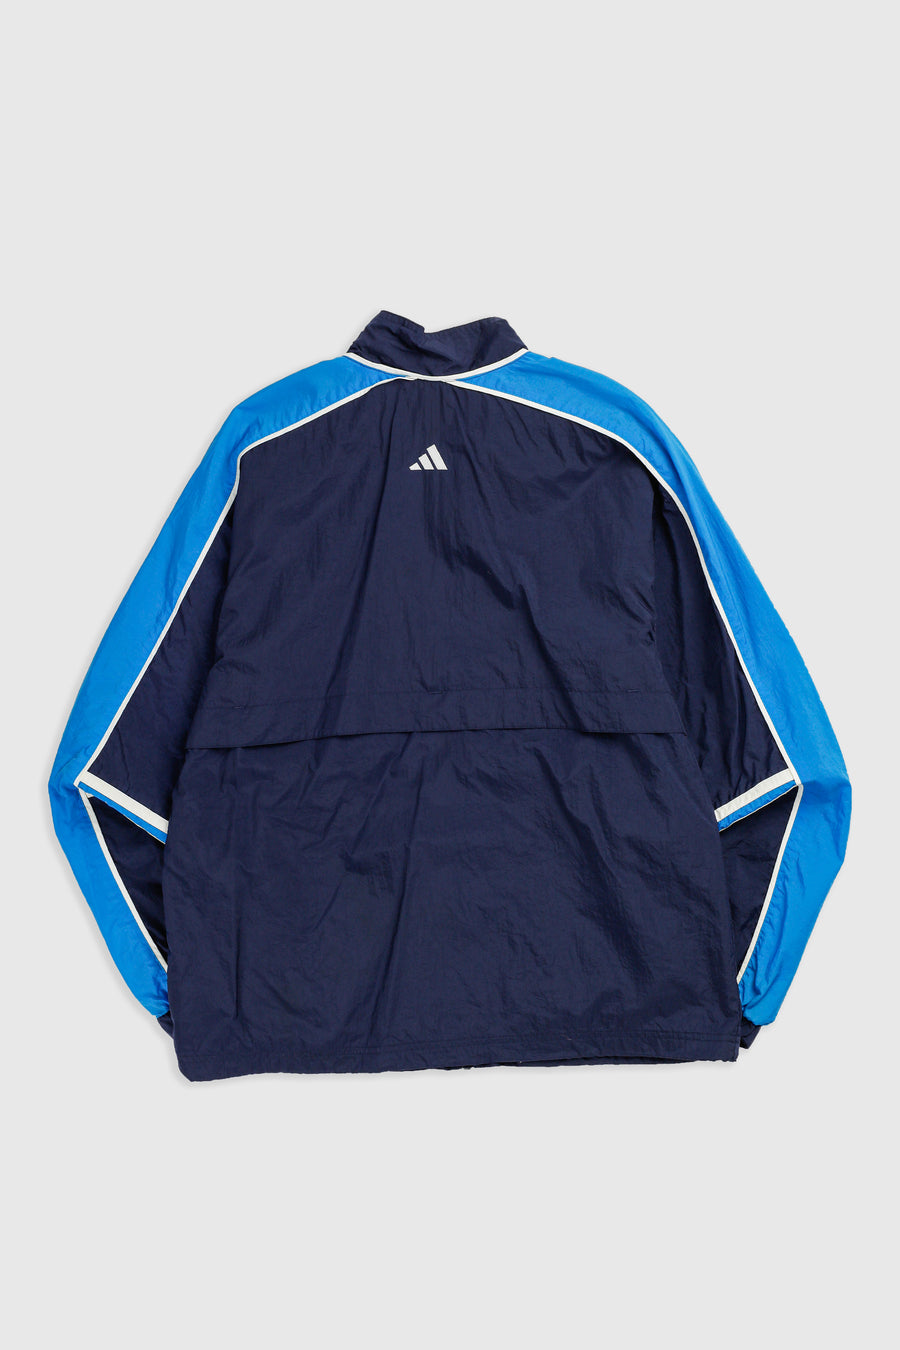 Vintage Adidas Windbreaker Jacket - S